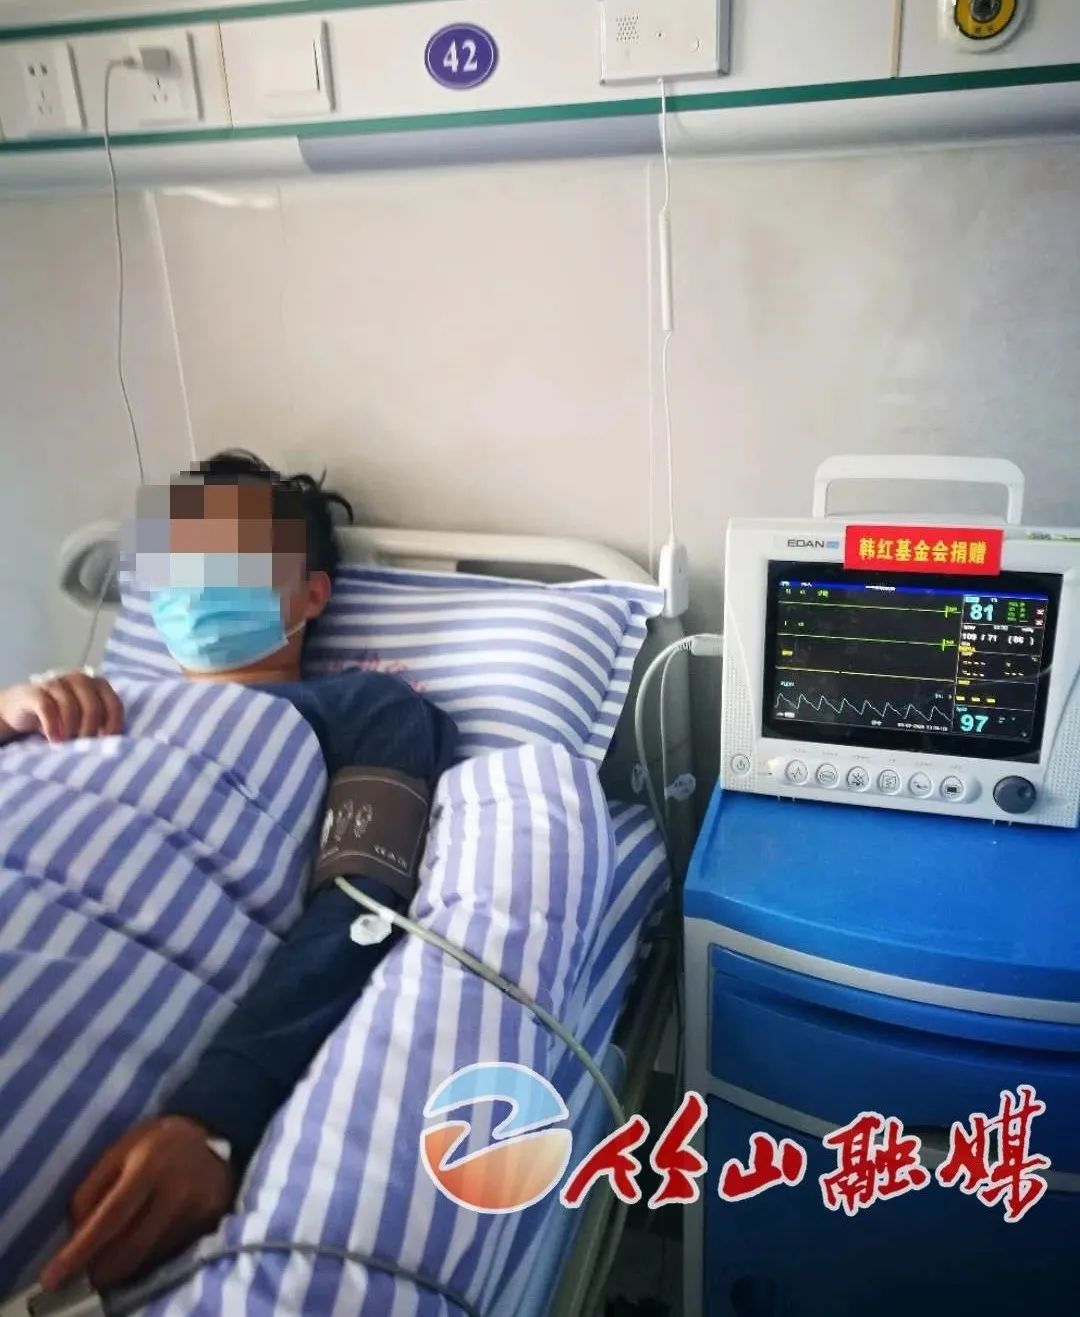 捐赠的心电监护仪在县妇幼保健院投入使用截止发稿,韩红爱心基金向